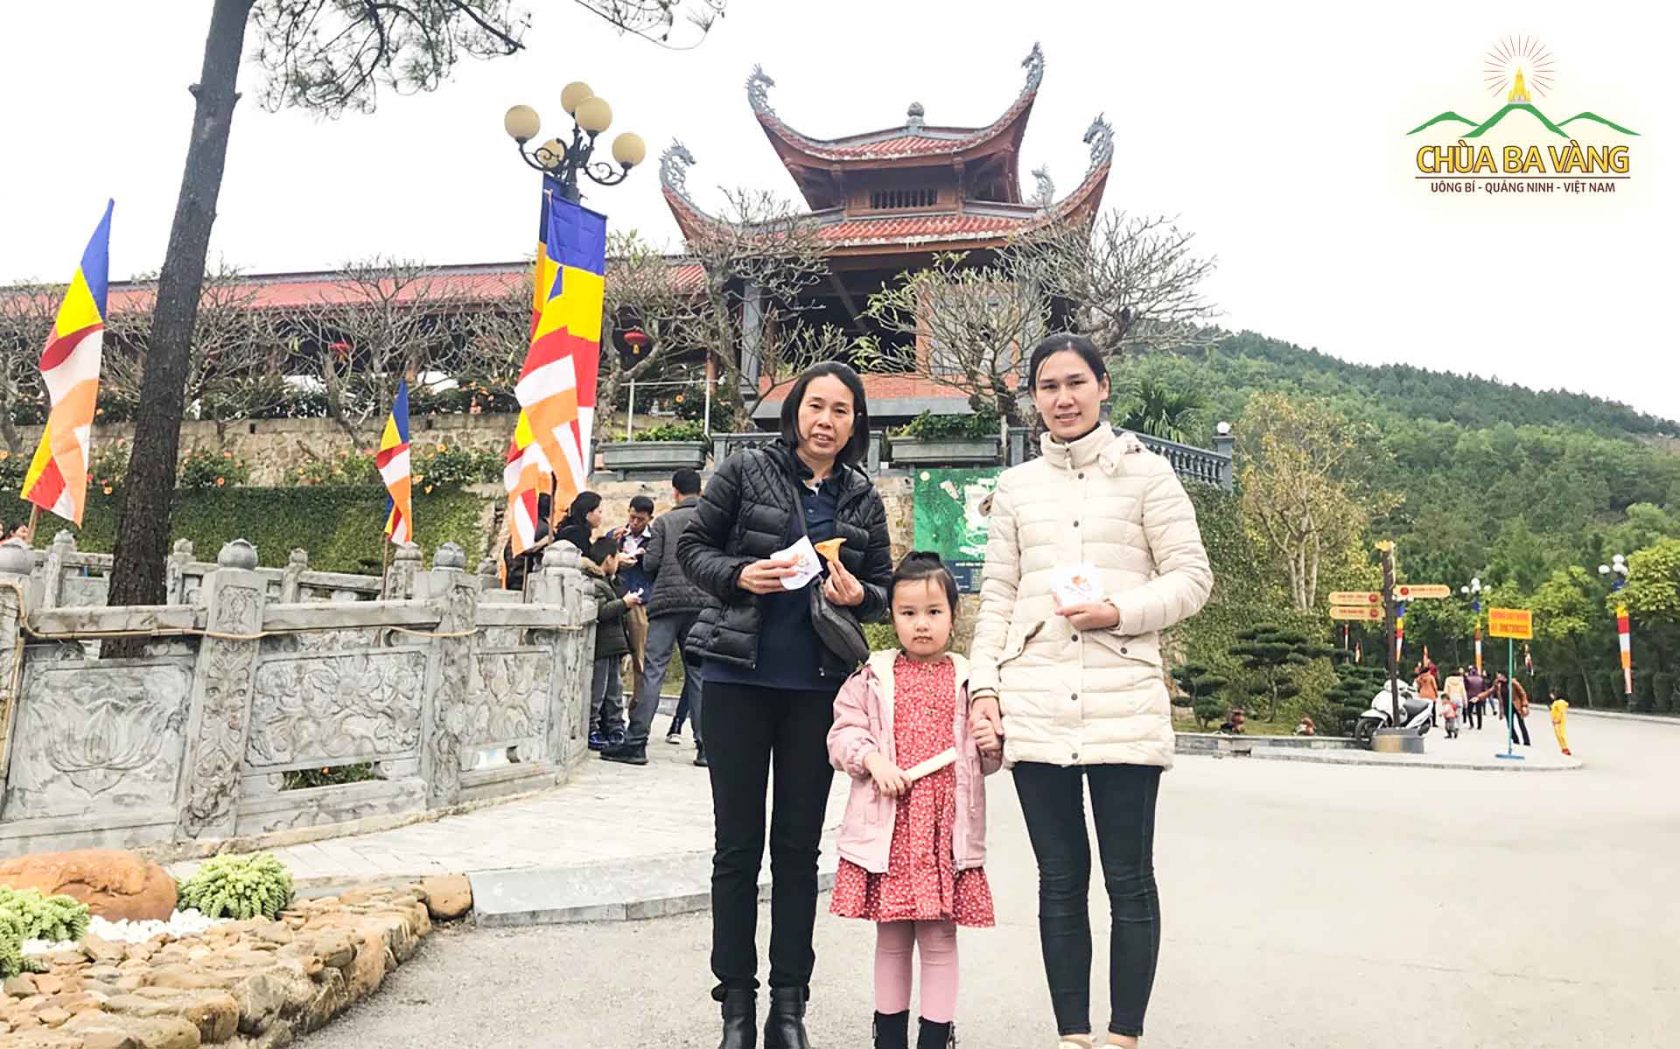 Chị Ngọc Quyên cùng gia đình rất hoan hỷ khi nhận được đồ ăn chay tại chùa